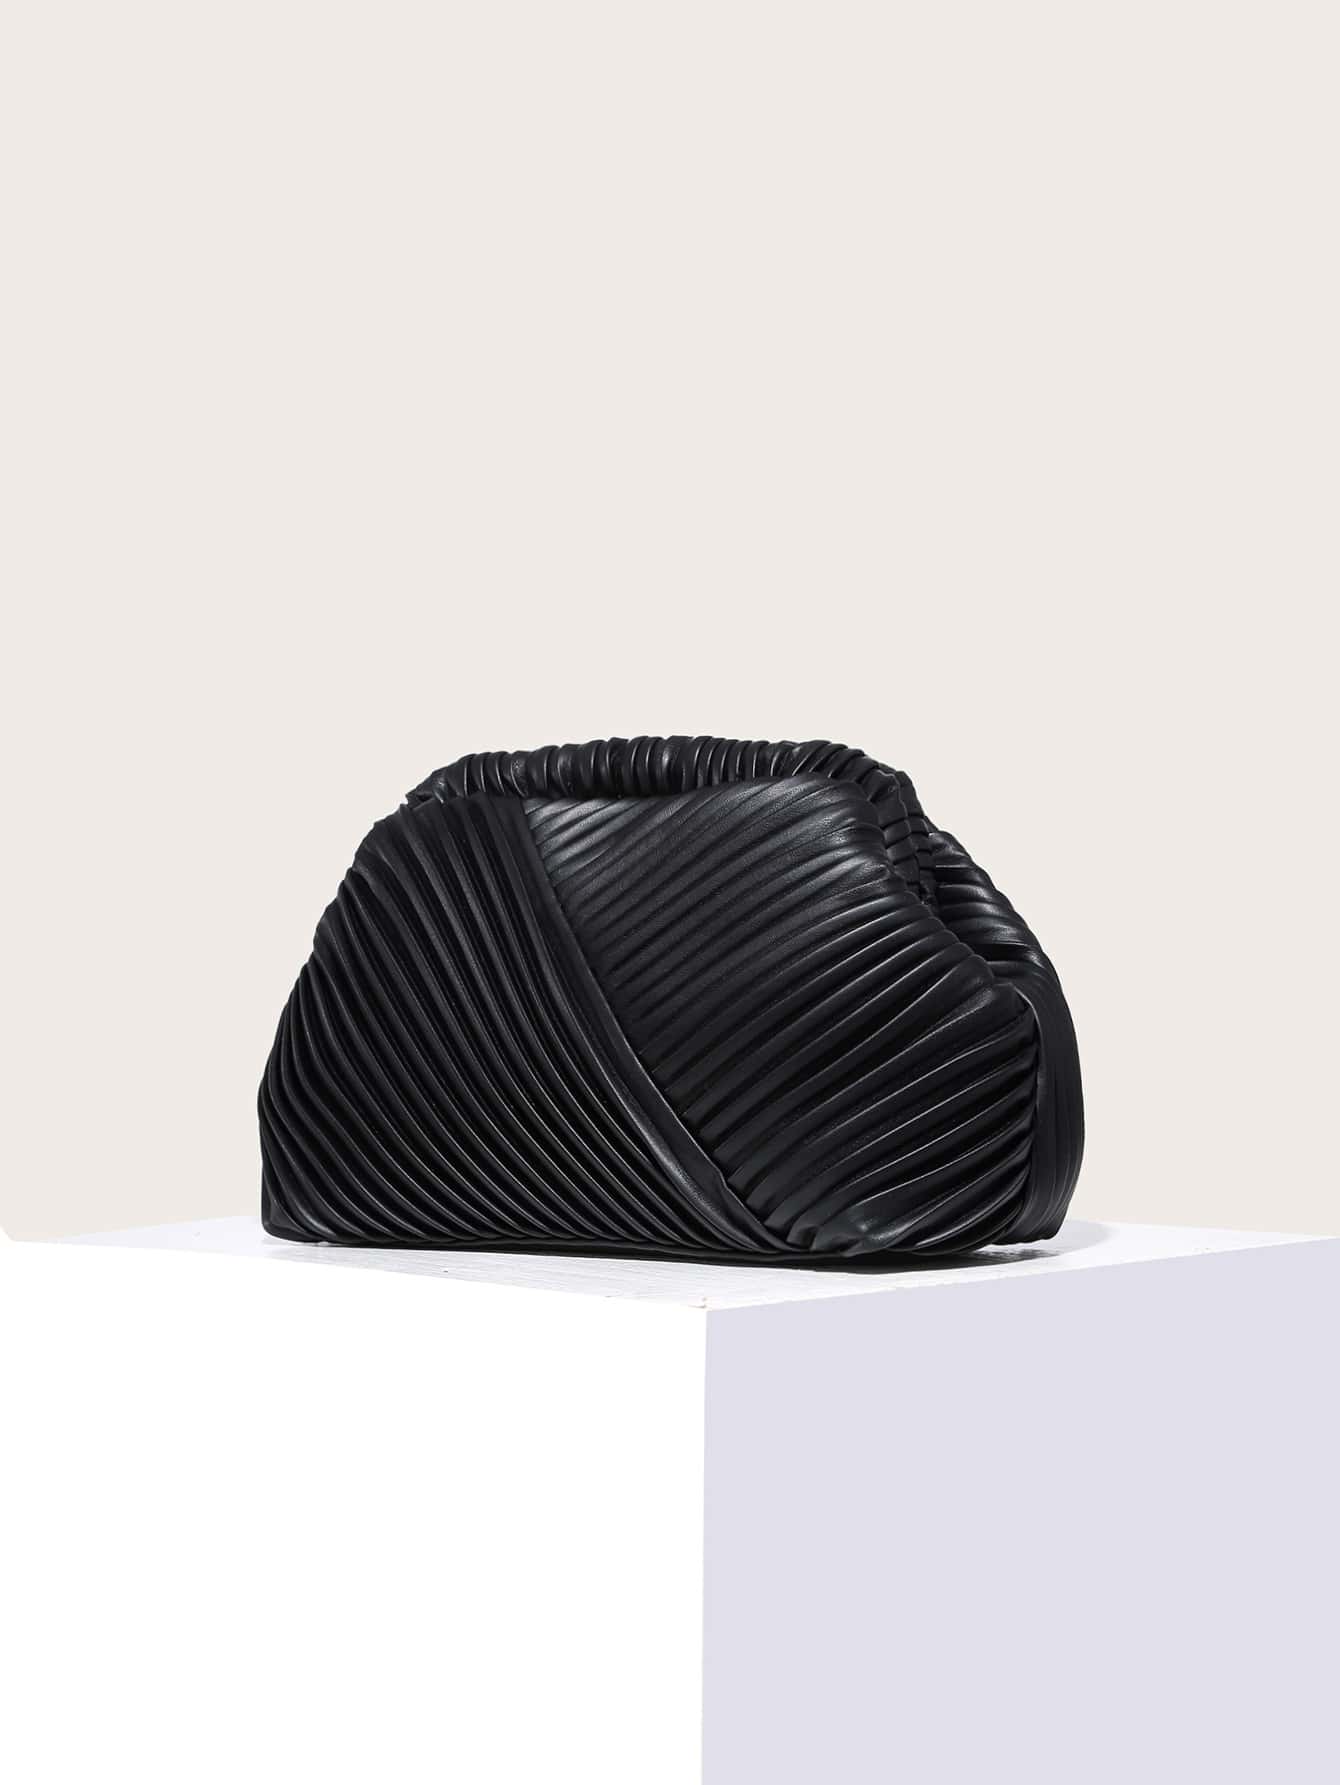 Модная минималистичная сумка со складками для женщин, черный блестящая блестящая сумка стразы в форме облака роскошная вечерняя сумка клатч для ужина вечеринки кошелек женская сумка через плечо су